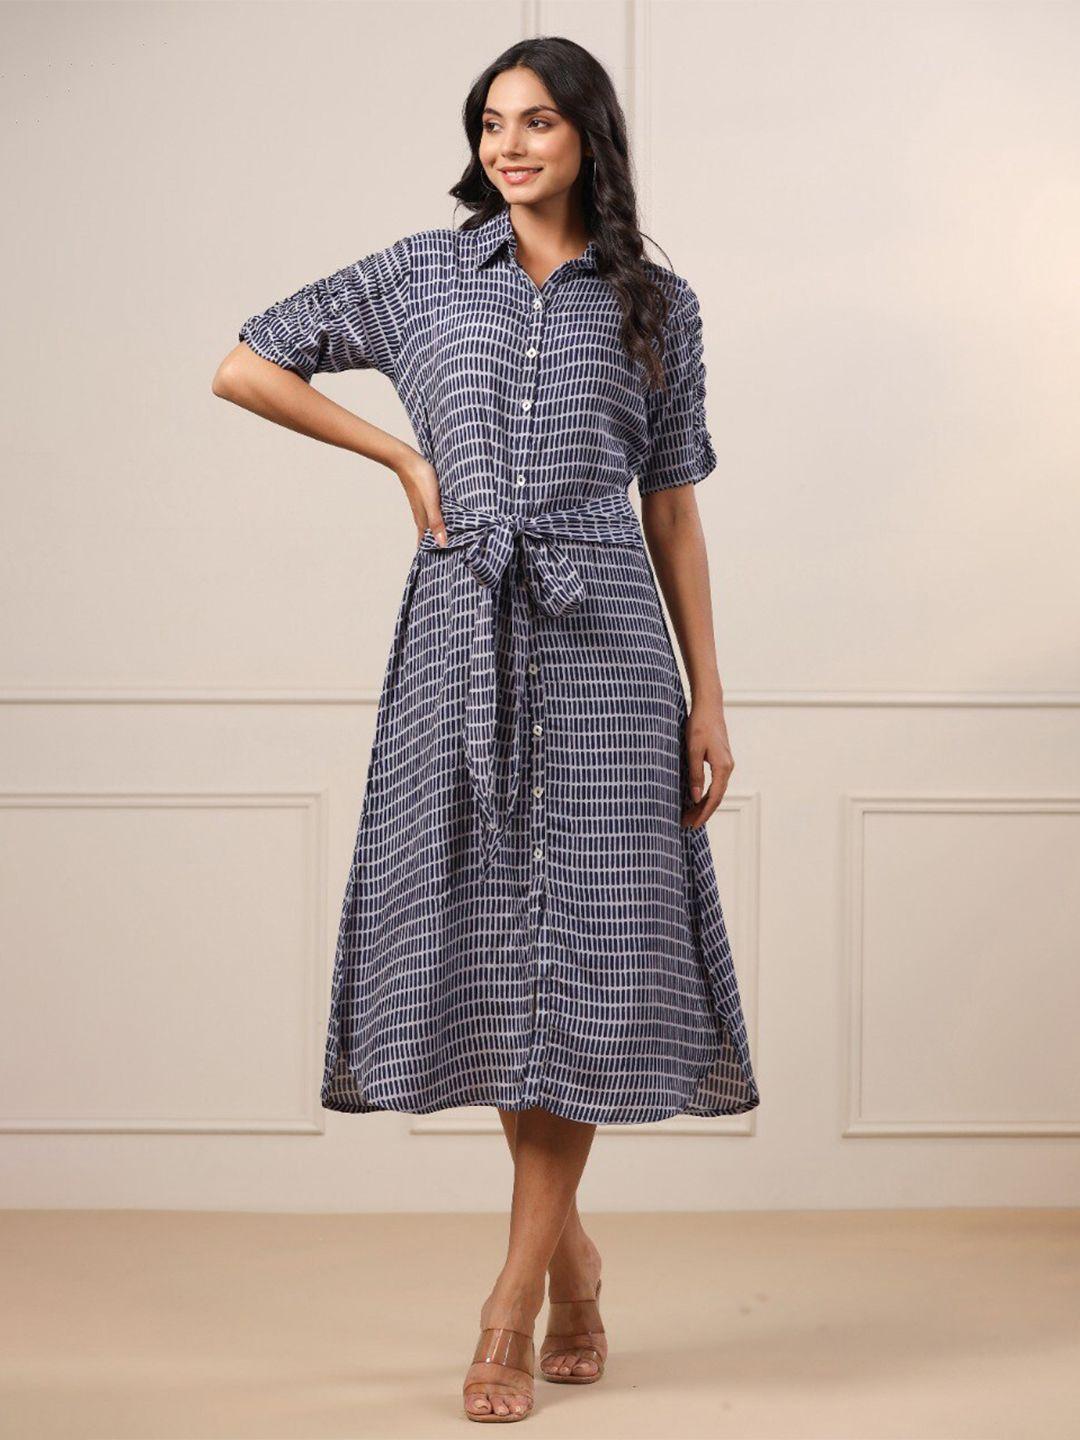 jisora women navy blue & white striped shirt midi dress